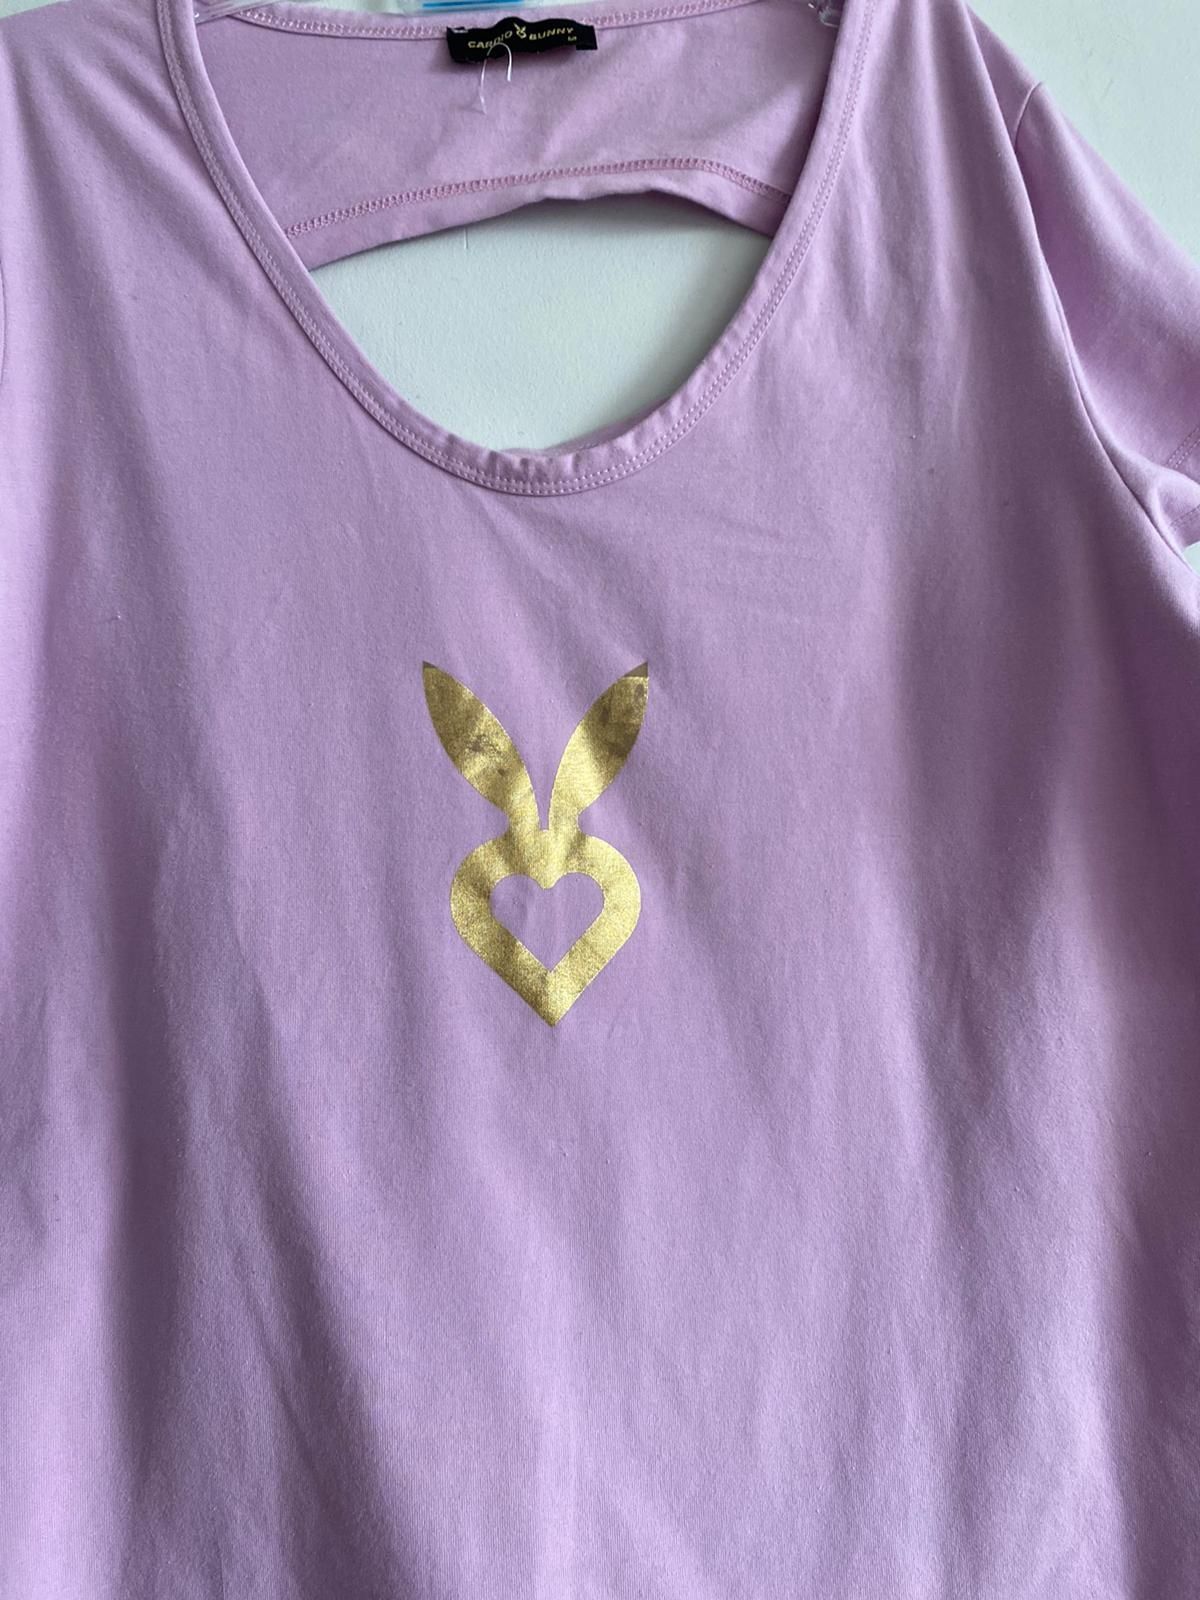 Fioletowy T-shirt Cardio Bunny M koszulka na siłownię lato wiosnę złot